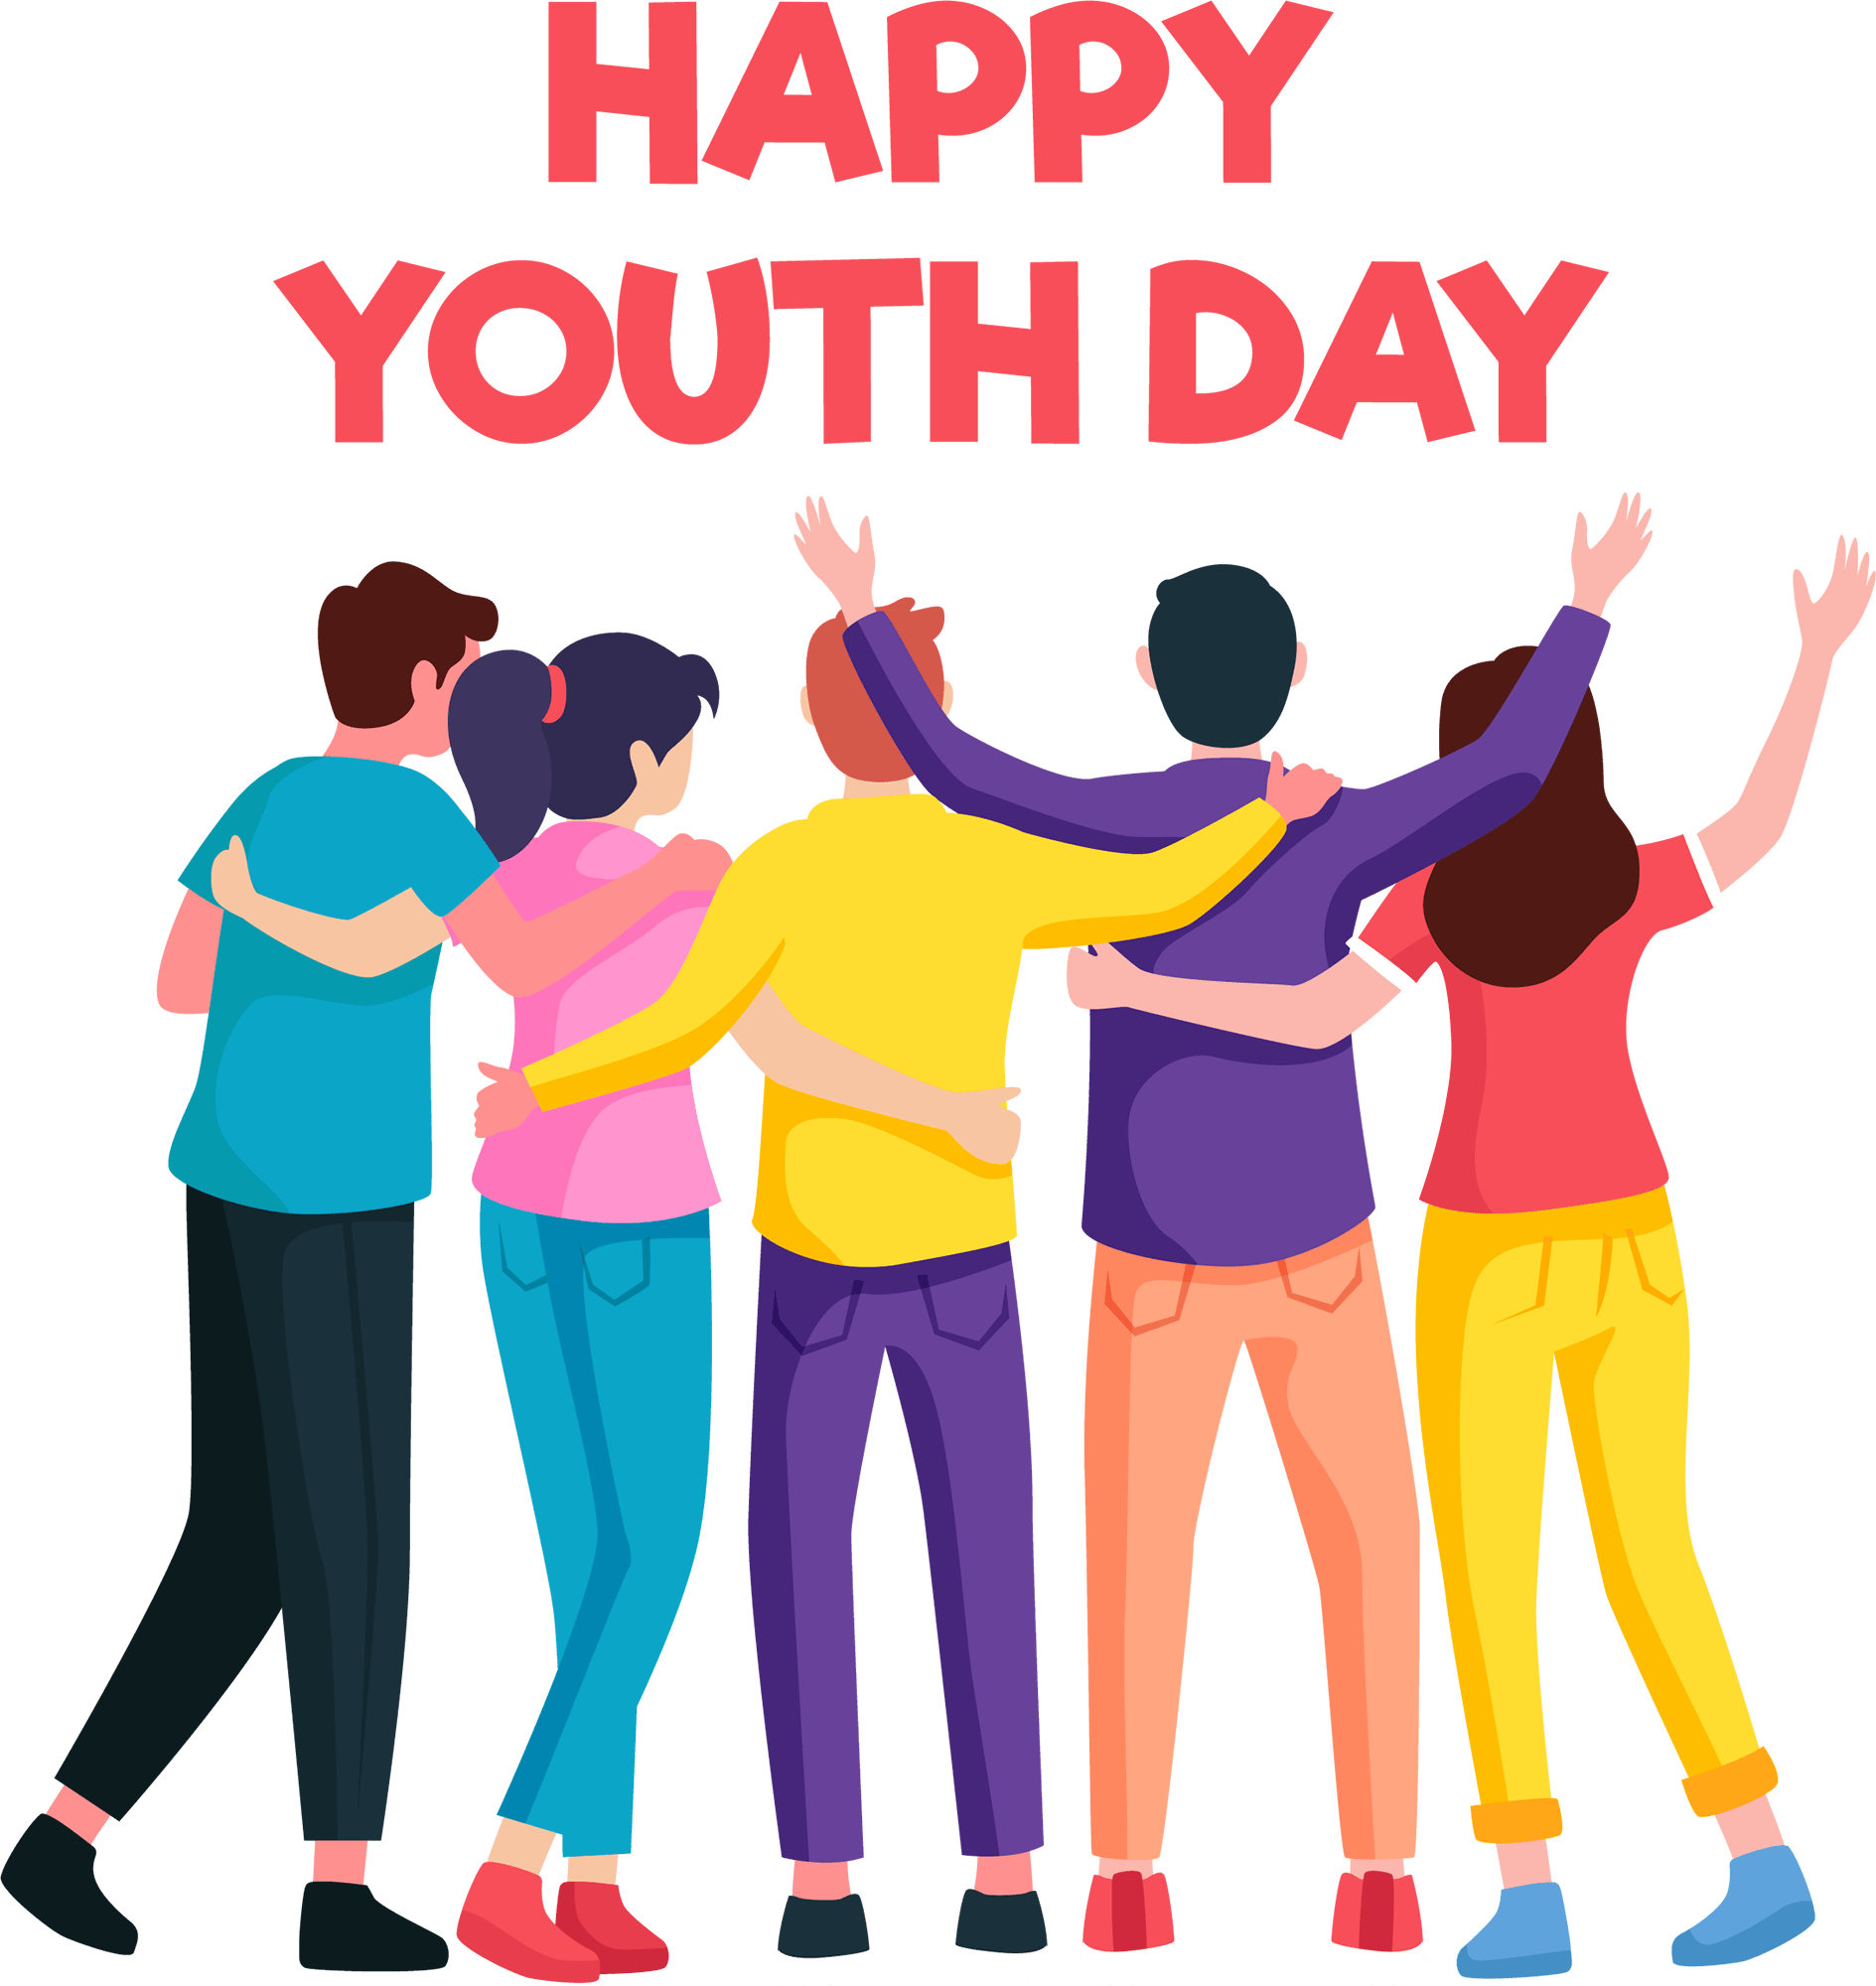 Ngày Thanh niên Thế giới là một dịp để tôn vinh tất cả các bạn trẻ có công trong xây dựng cộng đồng và thế giới hơn. Hình ảnh sẽ gợi lên được niềm kiêu hãnh và lạc quan trong tinh thần của bạn.